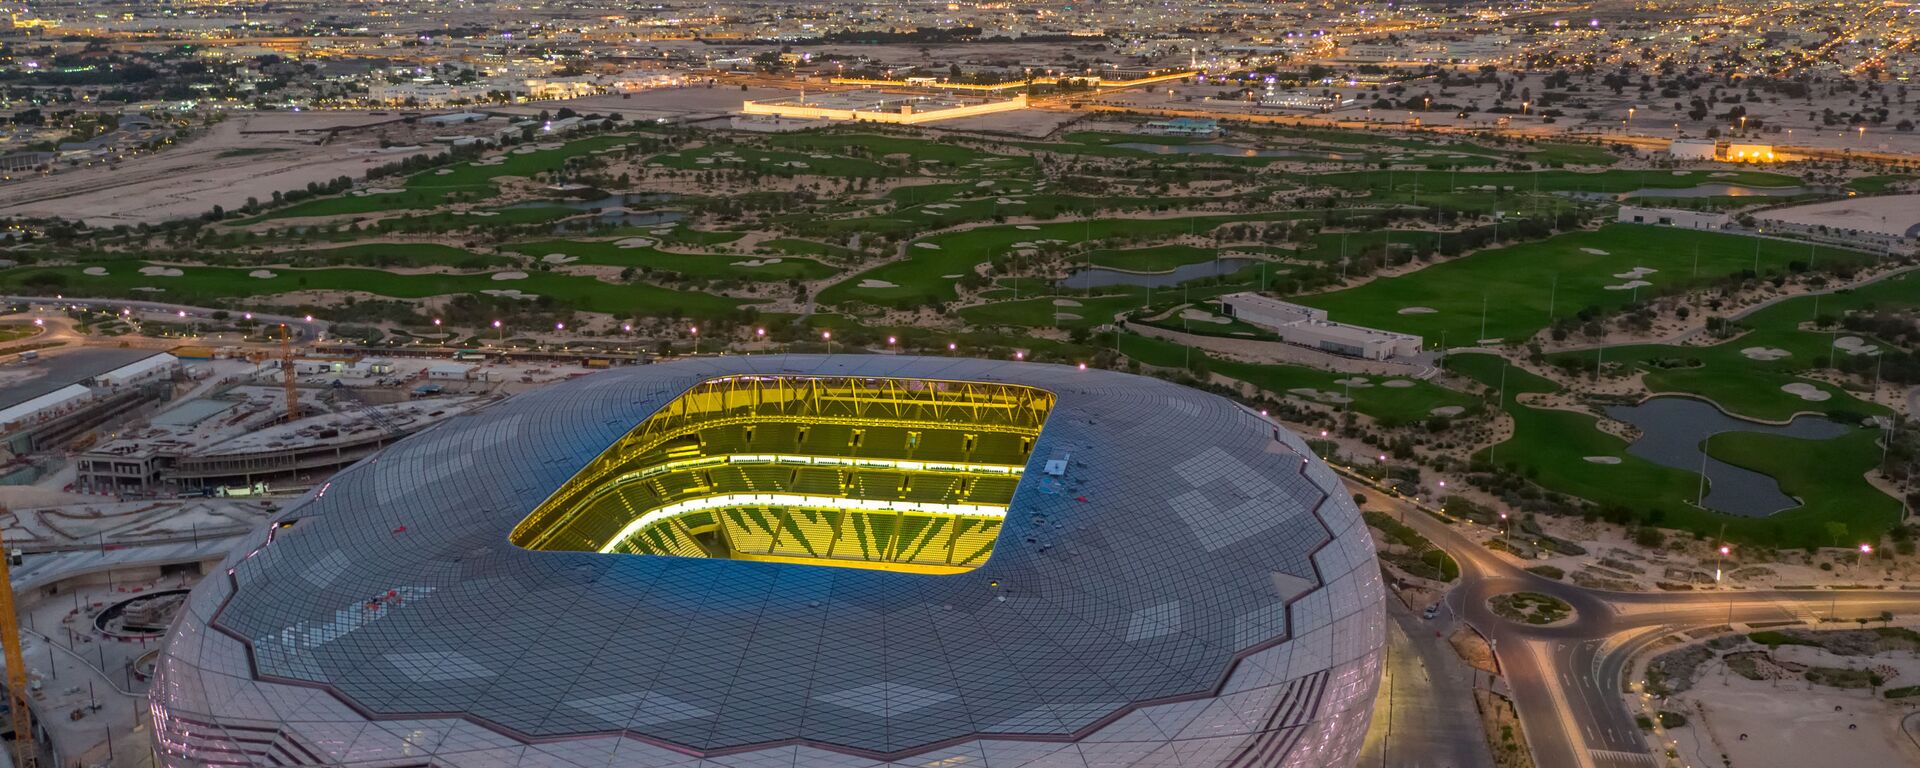 ملعب المدينة التعليمية، ضمن ملاعب كأس العالم في قطر 2022 بسعة 40 ألف متفرج - سبوتنيك عربي, 1920, 29.09.2022